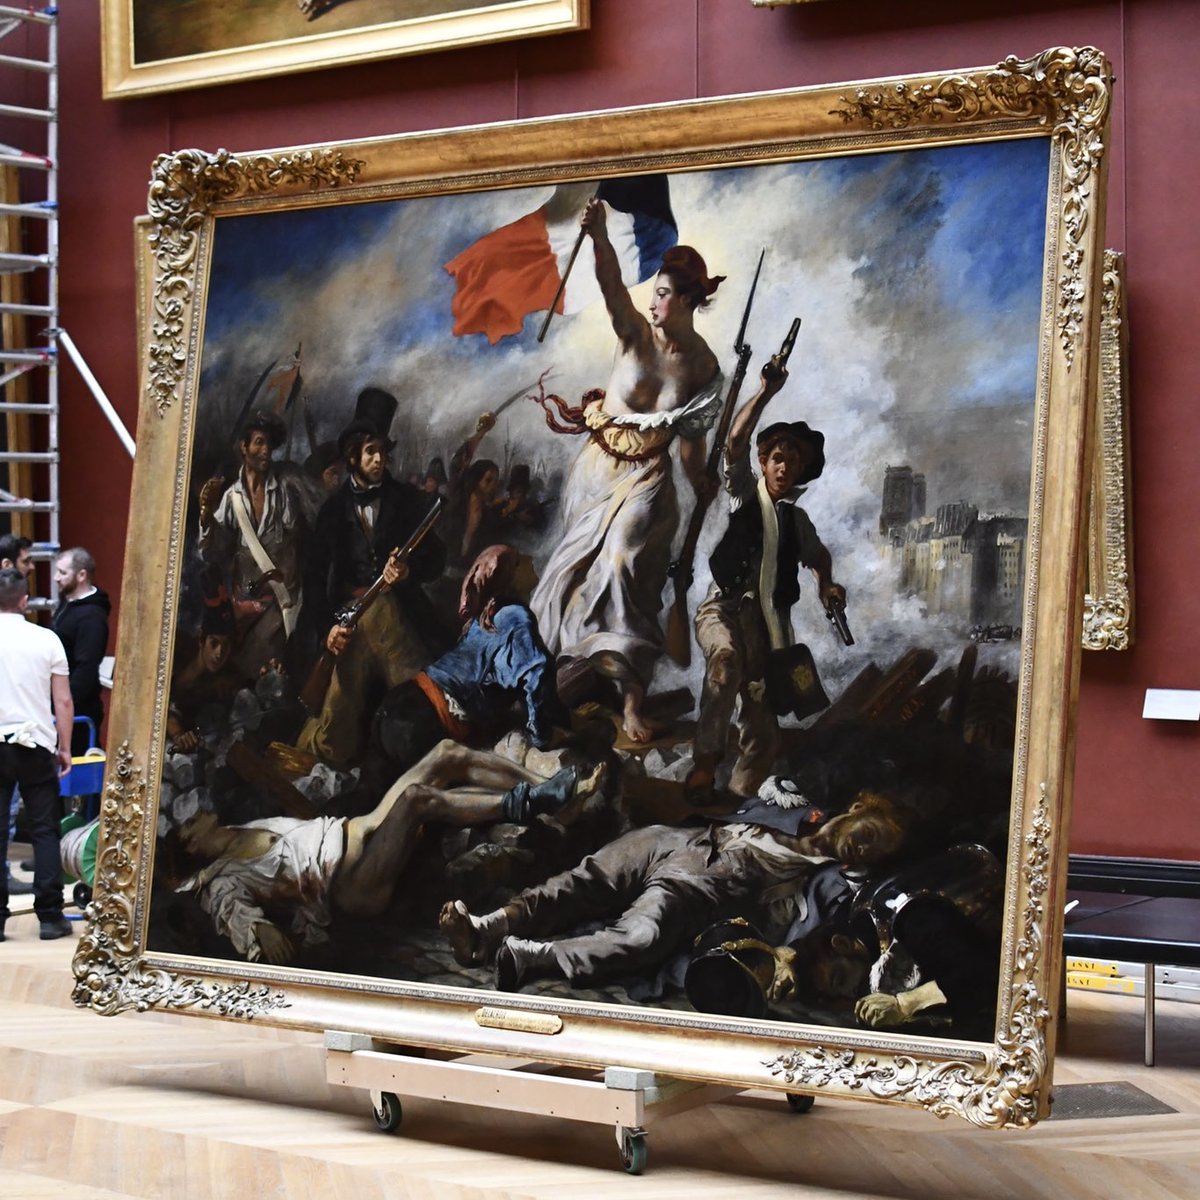 [Pause] « La Liberté guidant le peuple », le tableau monumental peint en 1830 par Eugène #Delacroix sera de nouveau visible dès ce 2 mai dans sa salle d’exposition, après six mois de restauration. 
Retrouver l'élan de la Liberté 🇫🇷... 
📷 Nicolas Bousser @MuseeLouvre #Patrimoine